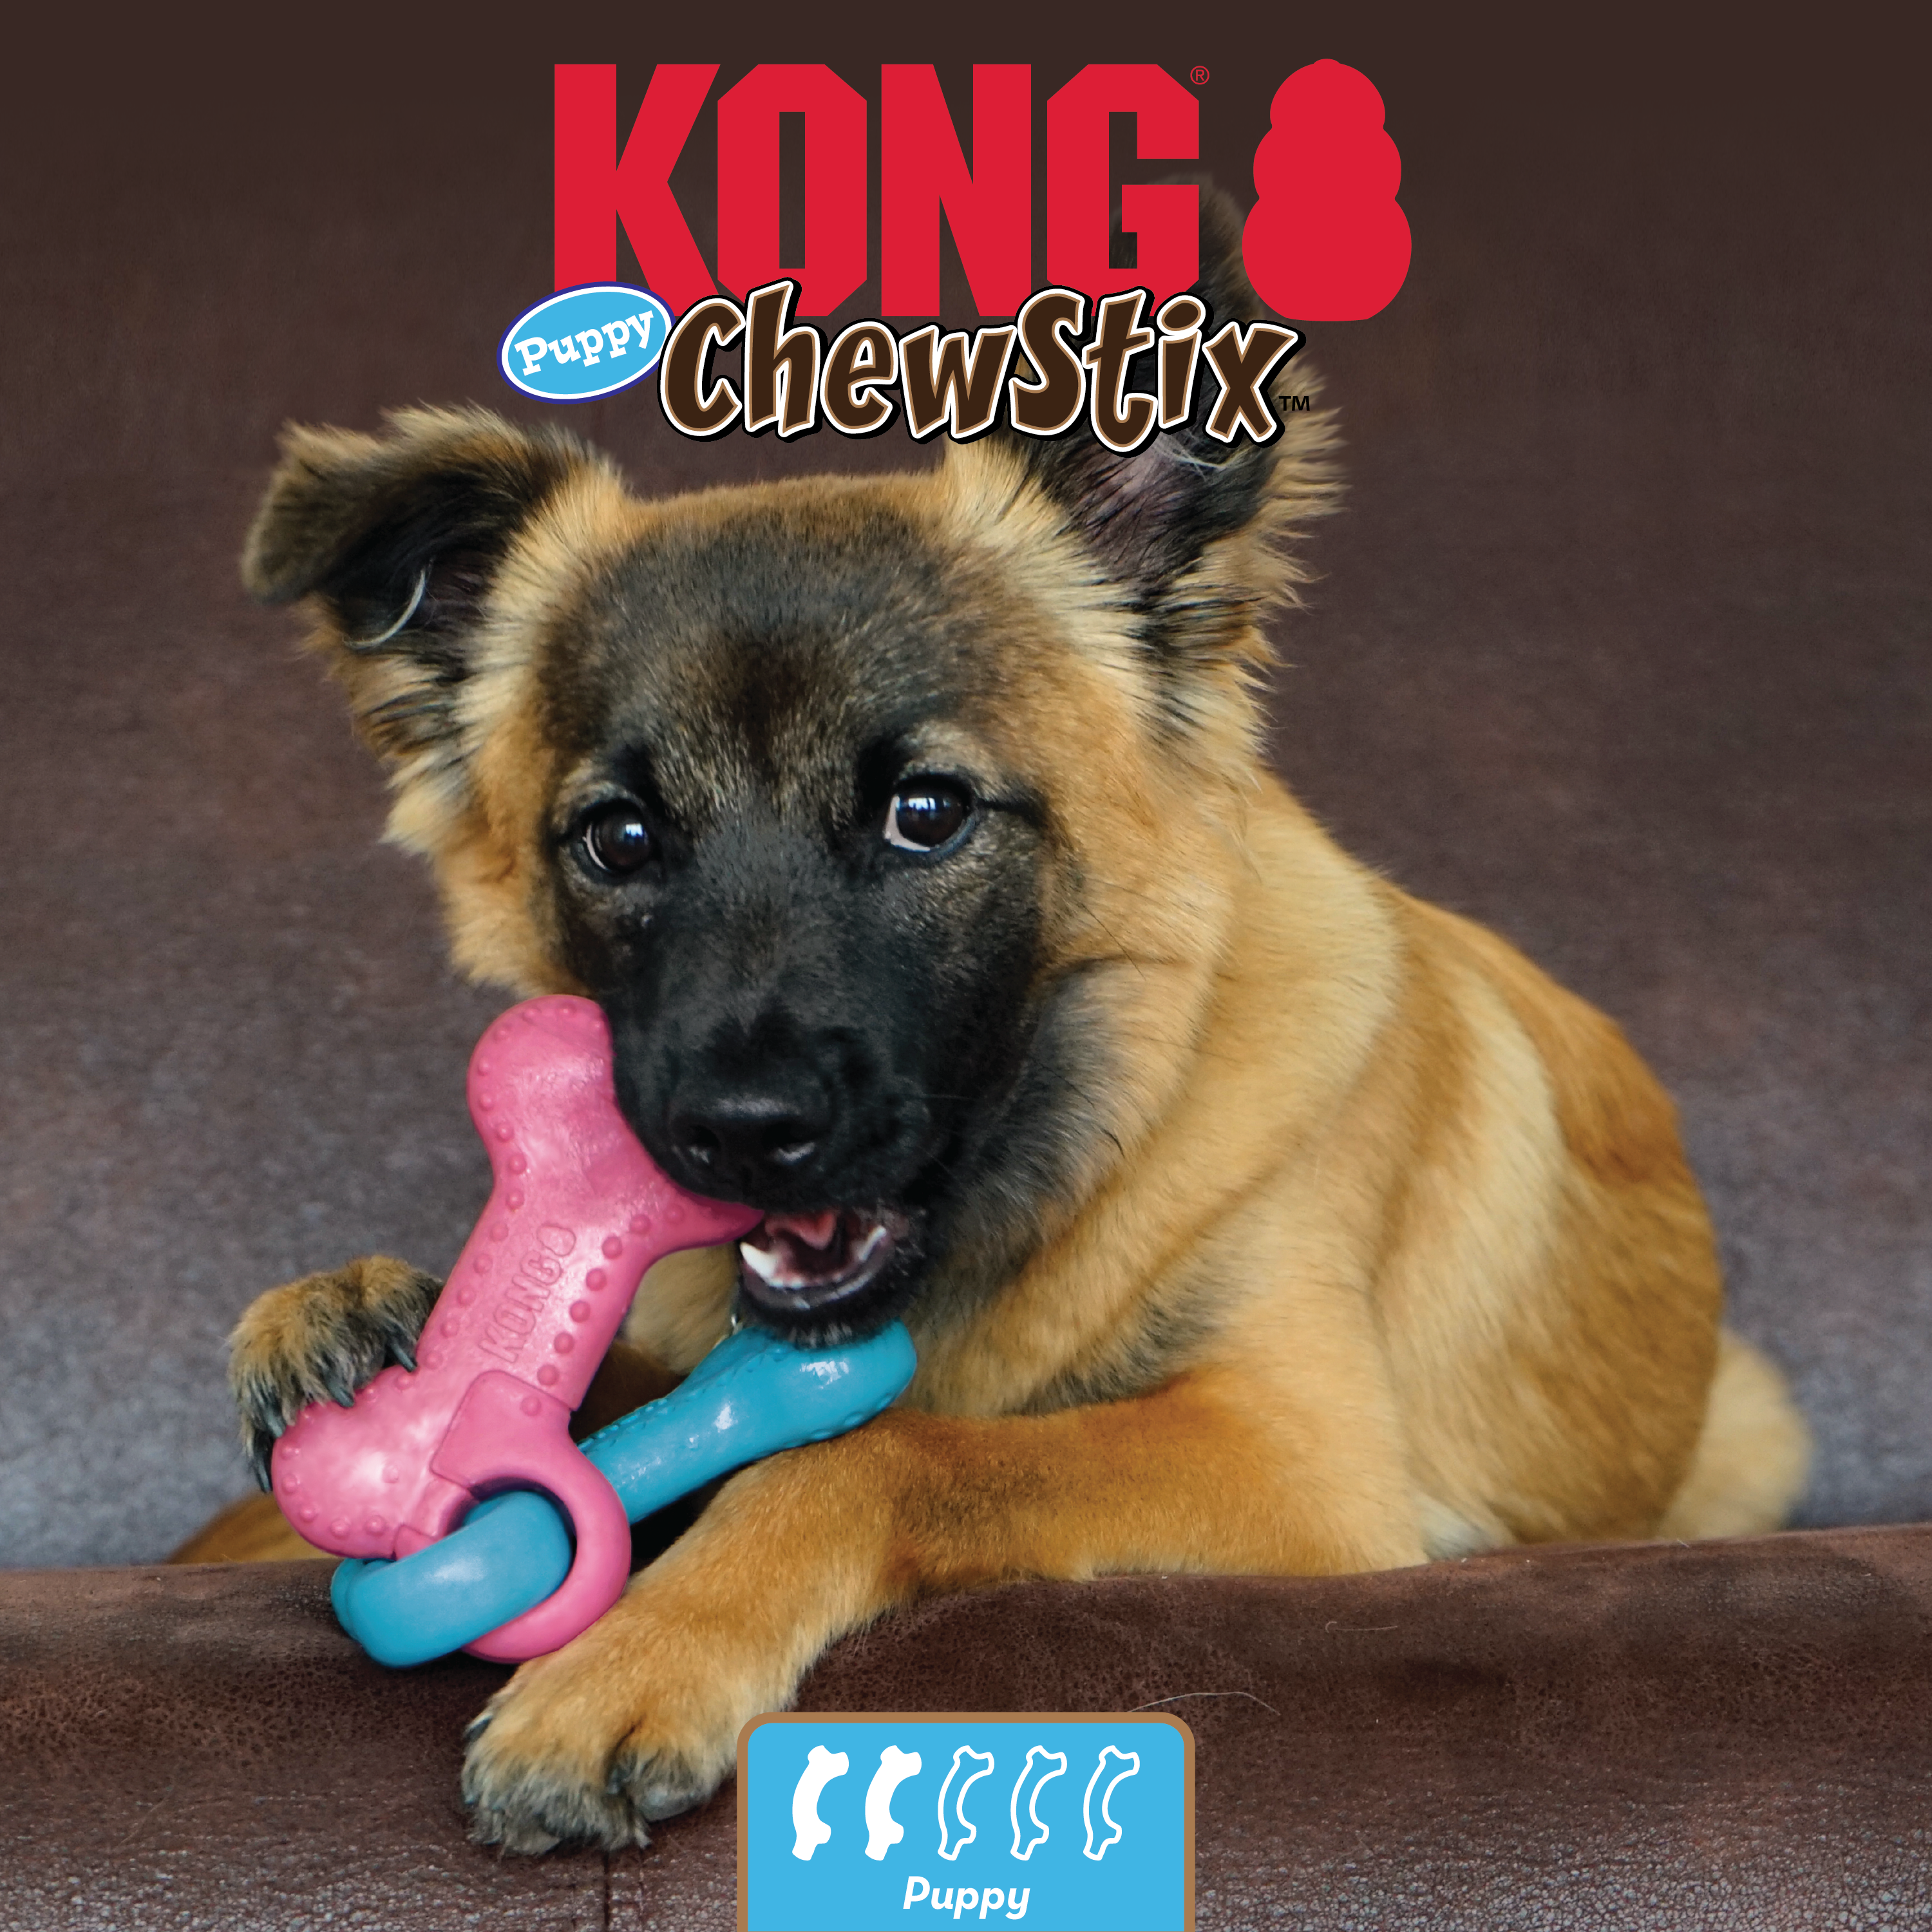 ChewStix Puppy Link Bone estilo de vida imagem do produto